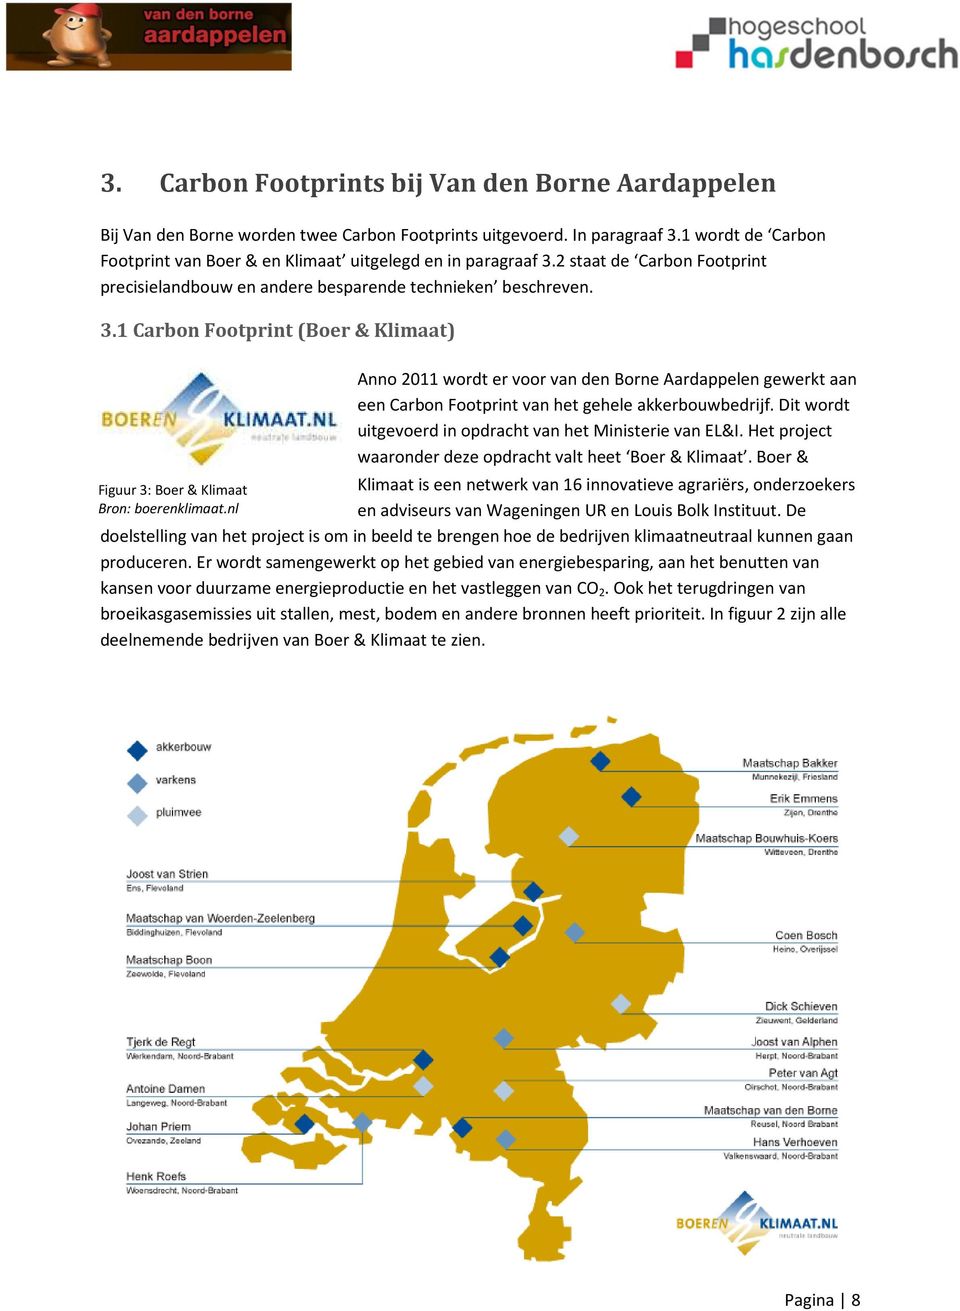 nl Anno 2011 wordt er voor van den Borne Aardappelen gewerkt aan een Carbon Footprint van het gehele akkerbouwbedrijf. Dit wordt uitgevoerd in opdracht van het Ministerie van EL&I.